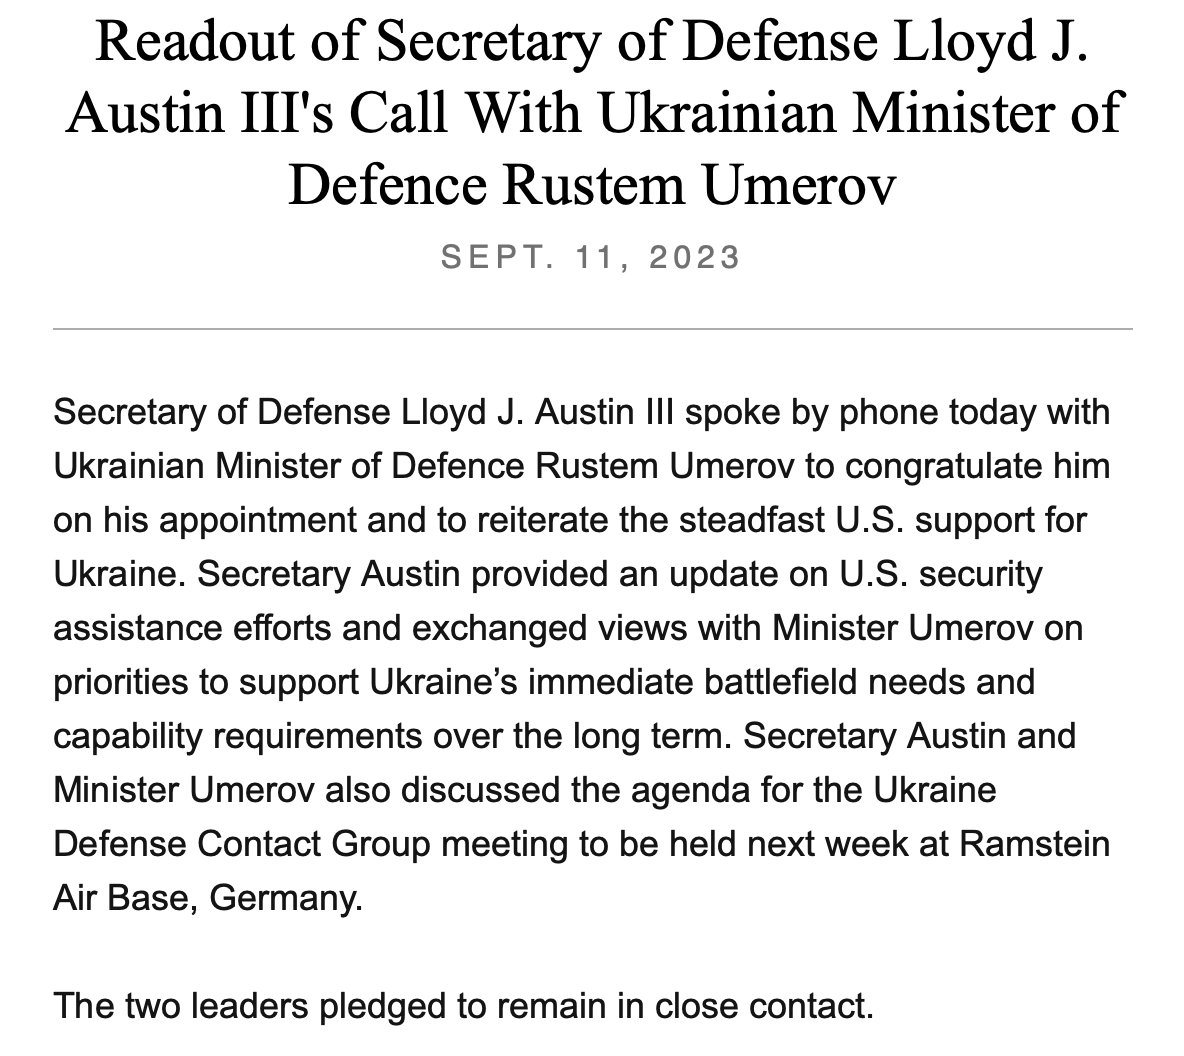 Il @SecDef americano Lloyd Austin ha parlato lunedì con il nuovo ministro della Difesa ucraino Rustem Umerov, secondo @DeptofDefense. L'appello era quello di ribadire il fermo sostegno degli Stati Uniti all'Ucraina e anche di fornire a Umerov un aggiornamento sull'assistenza statunitense